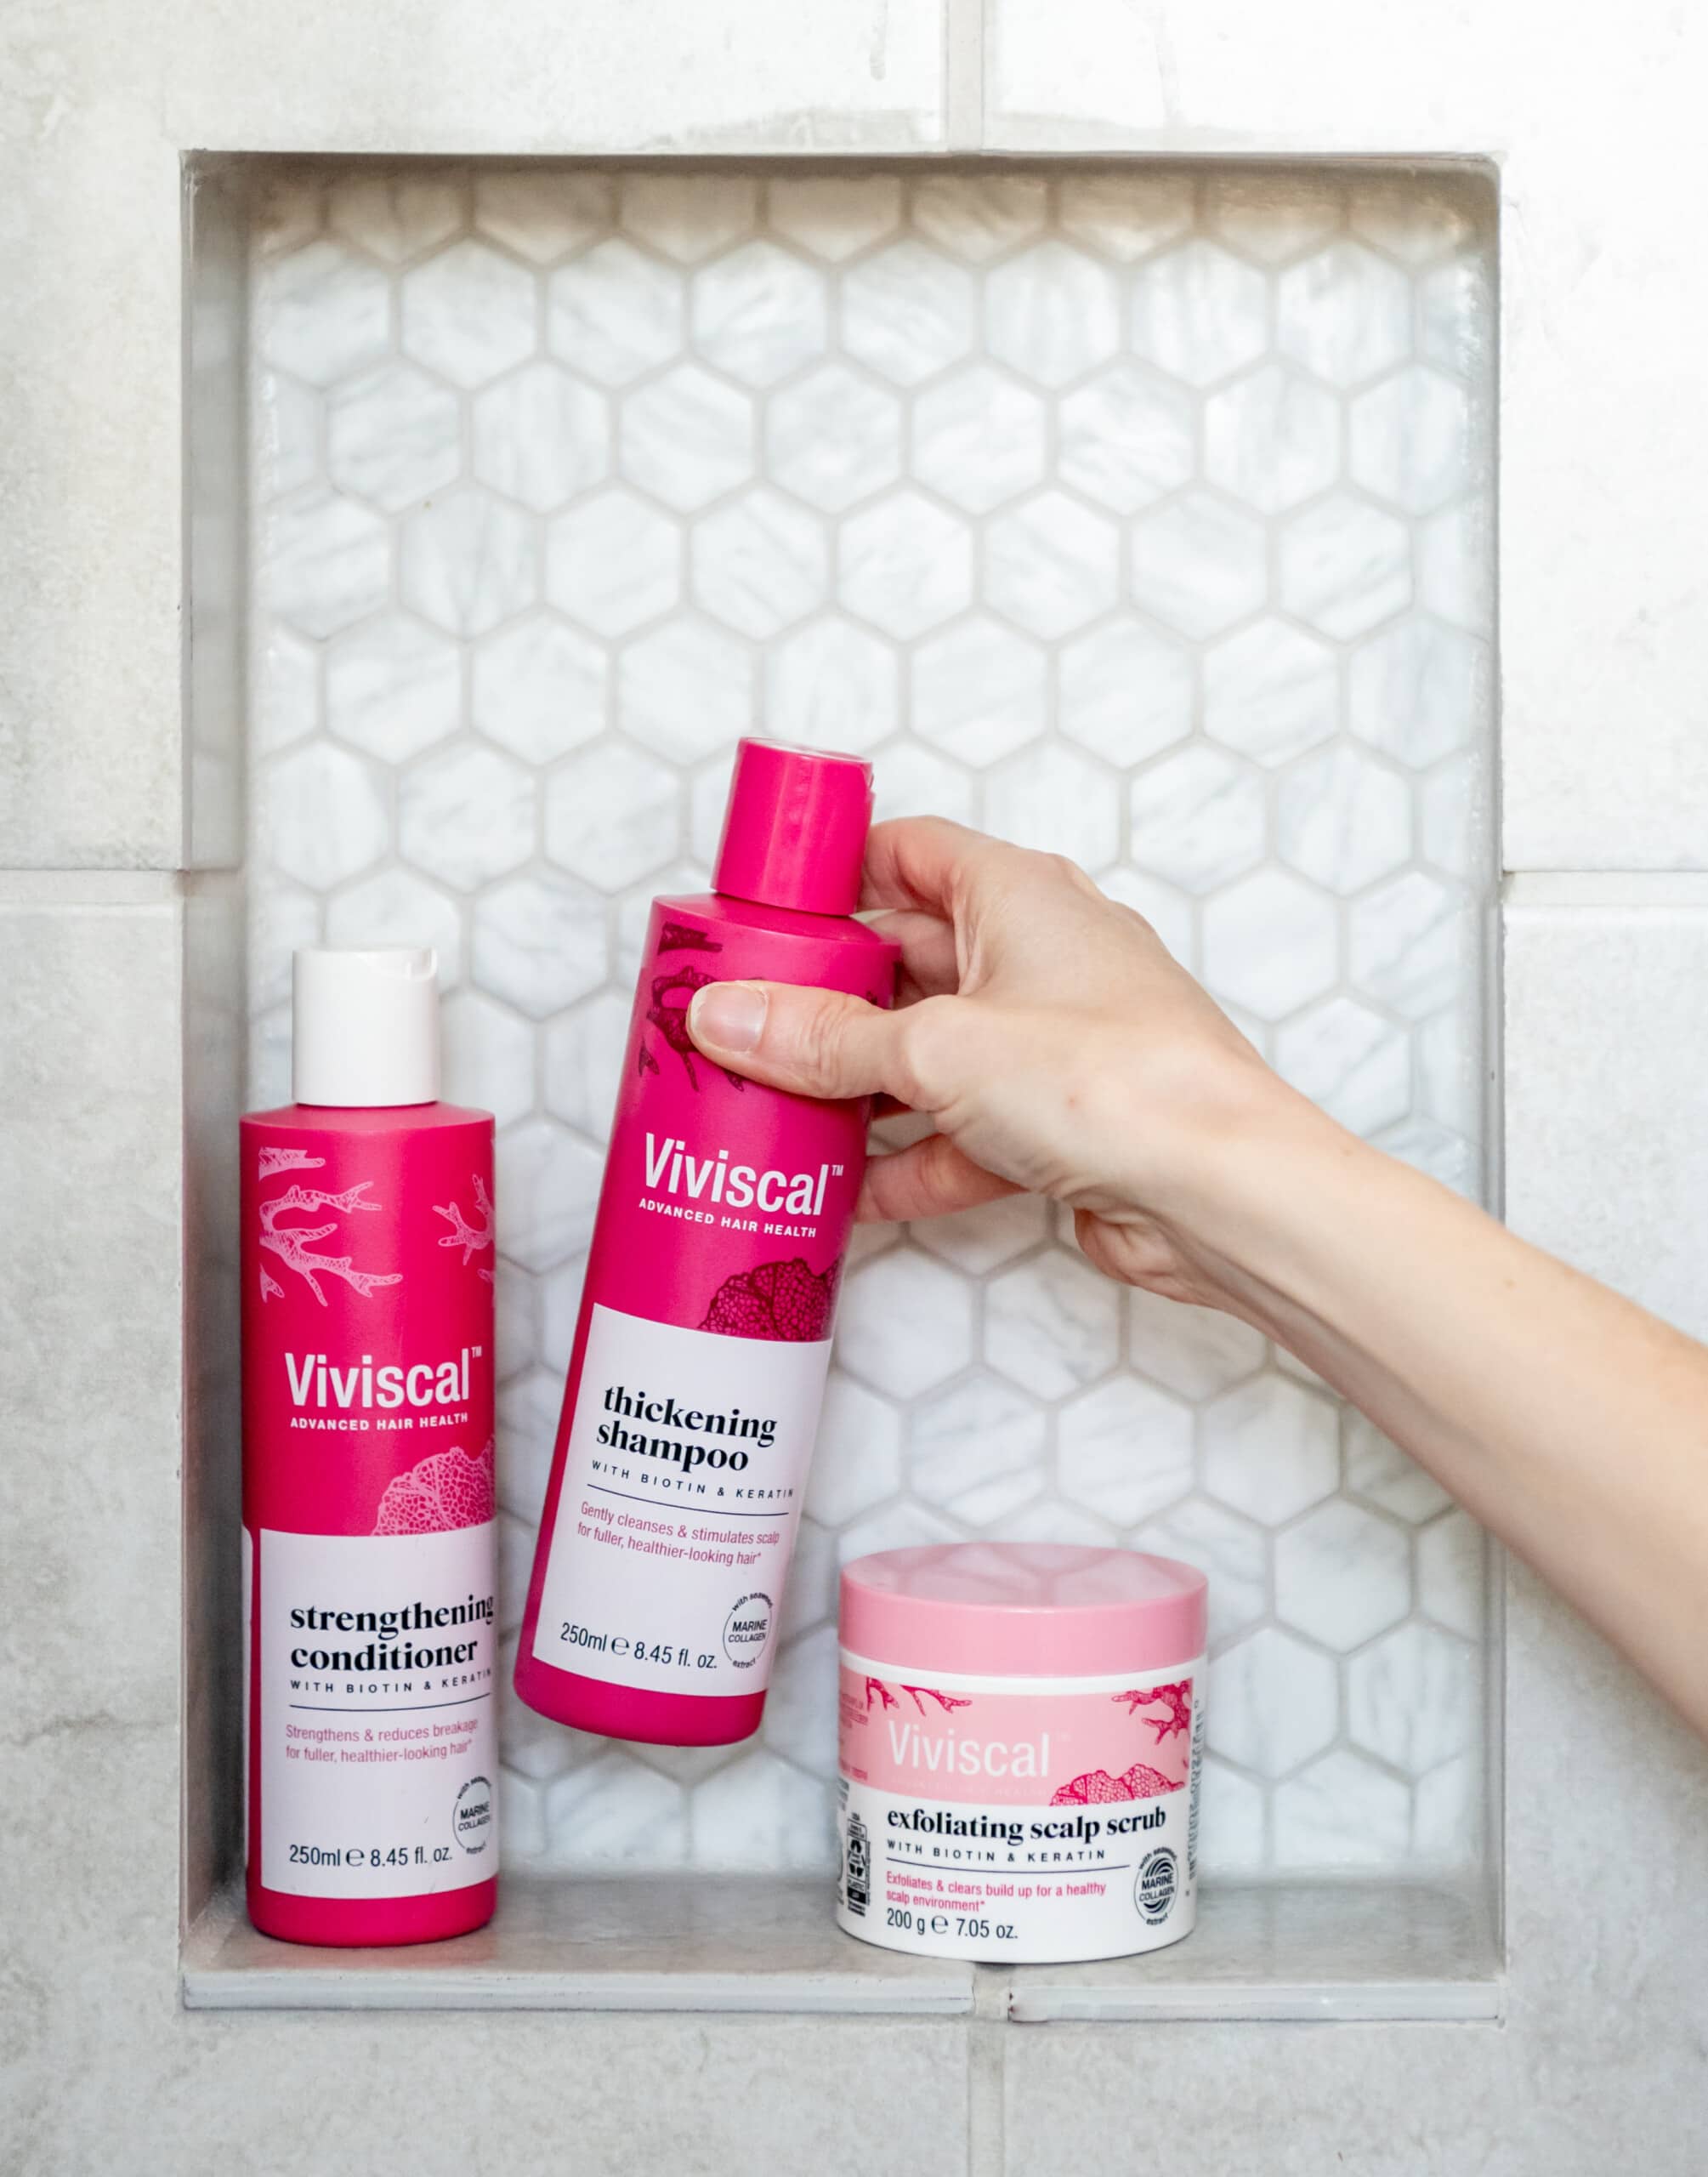 Viviscal shampoo, conditioner, and scalp scrub in the bathroom ledge